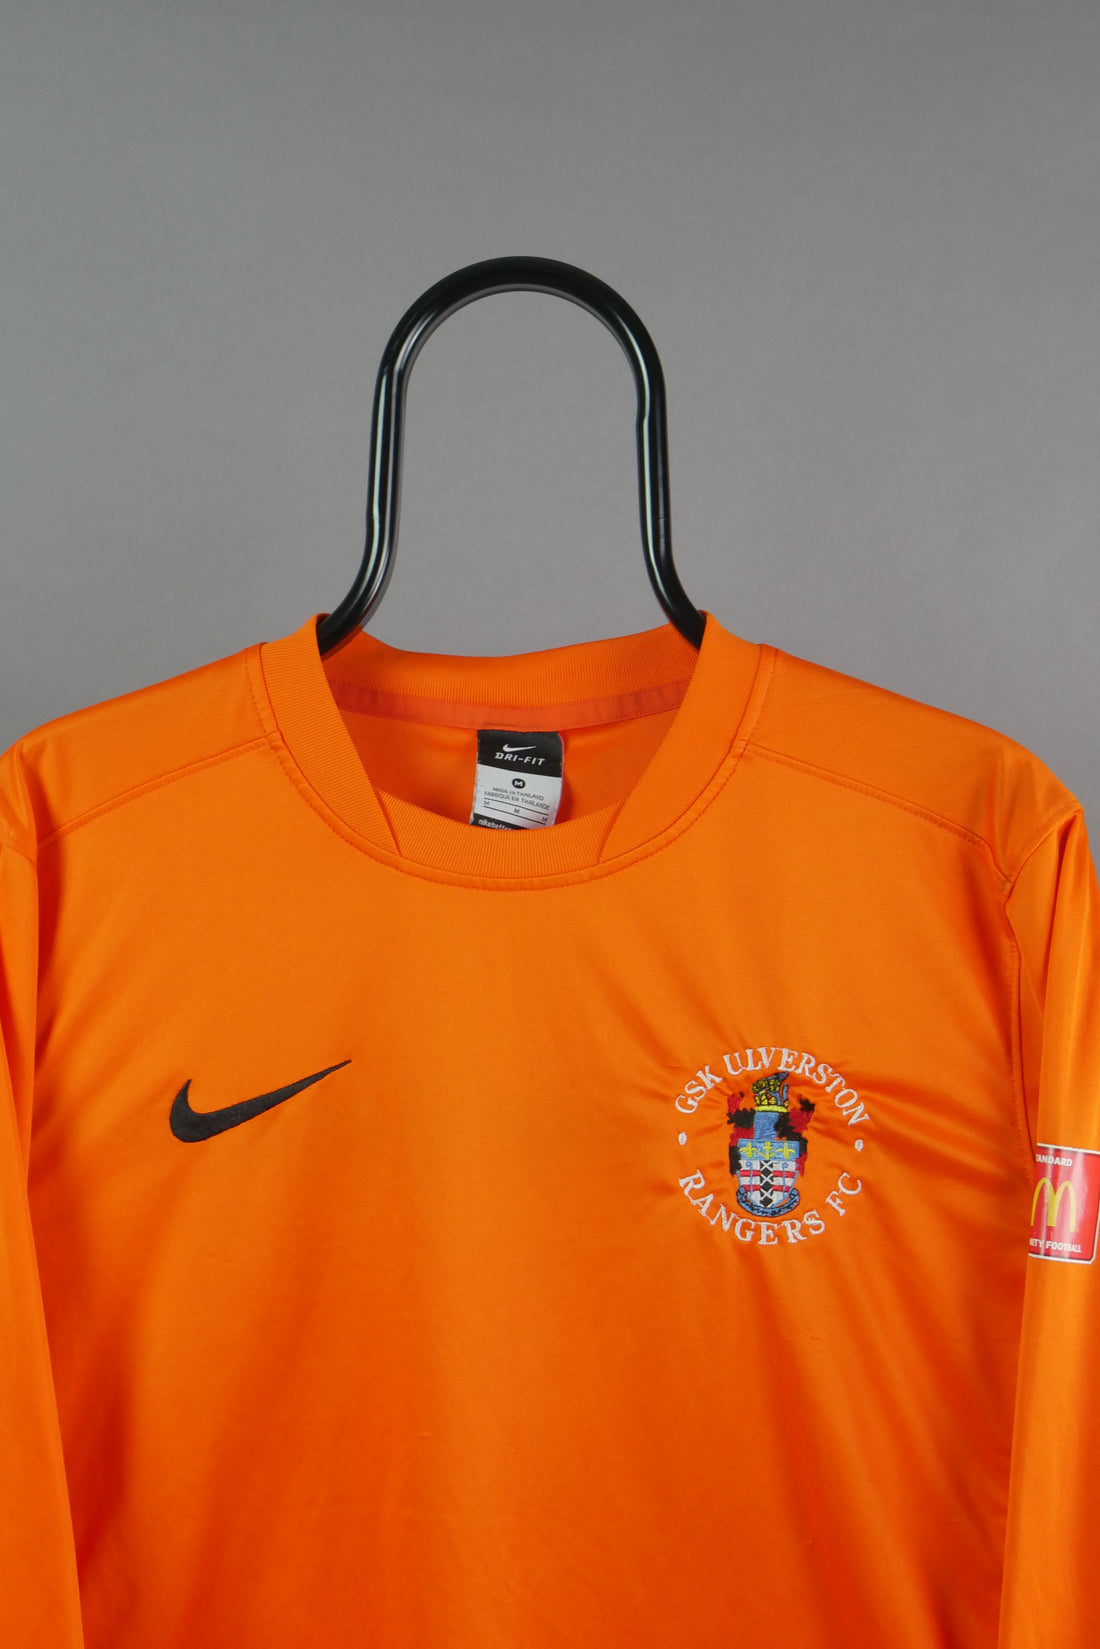 The Nike GSK Ulverston Rangers FC Long Sleeve T-Shirt (M)